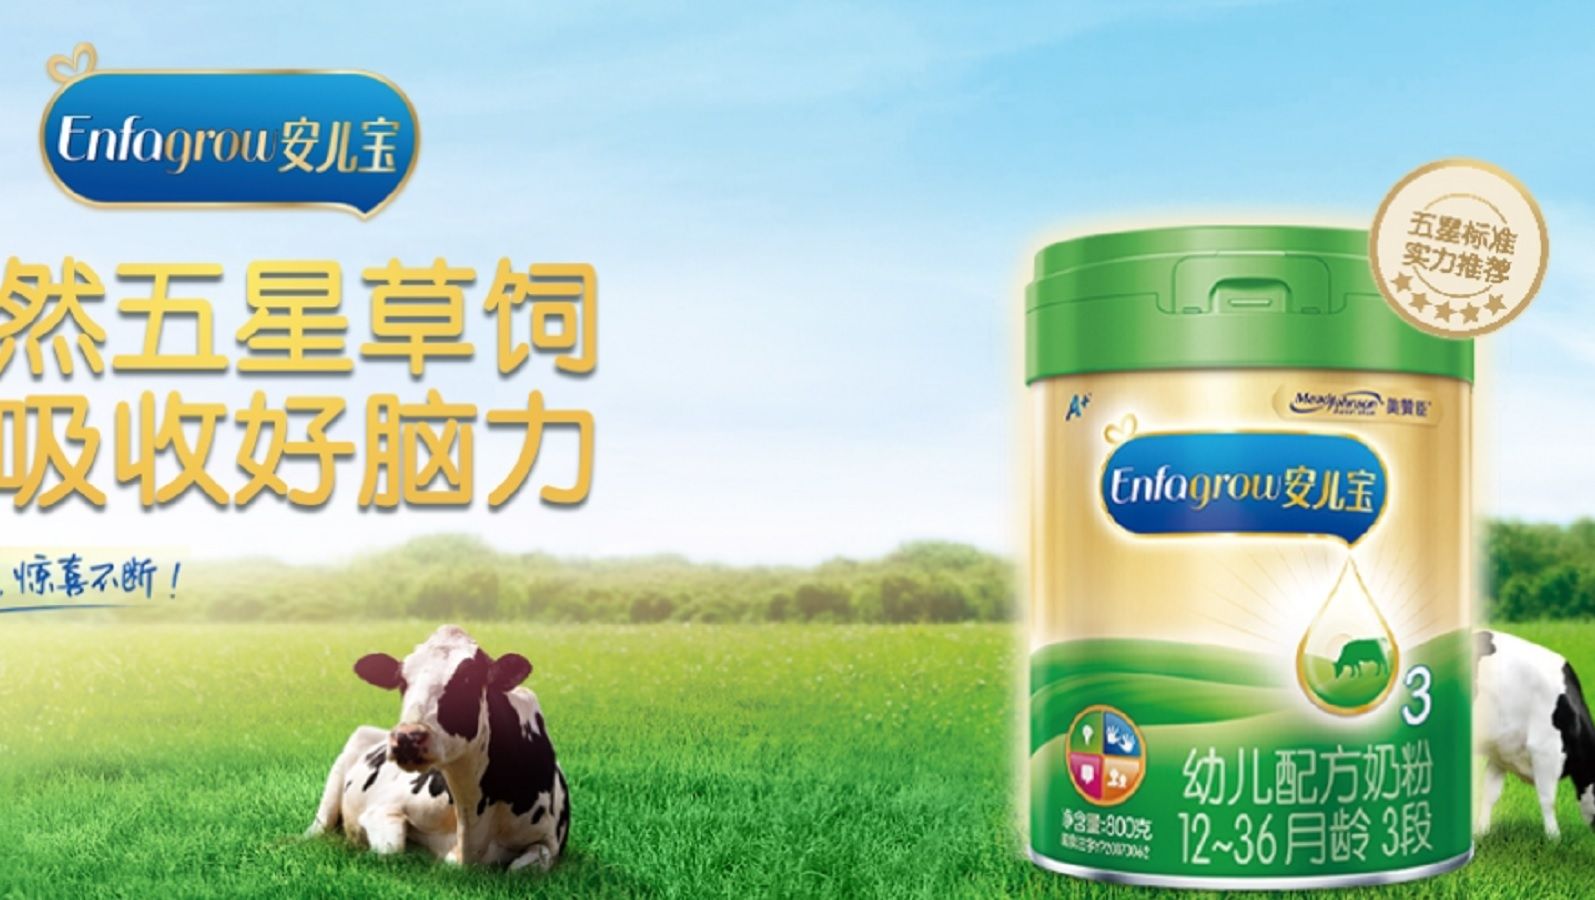 英国日用品大手が中国｢粉ミルク事業｣売却の裏側 地方都市や農村部で知名度が低いという課題も | 「財新」中国Biz＆Tech | 東洋経済オンライン